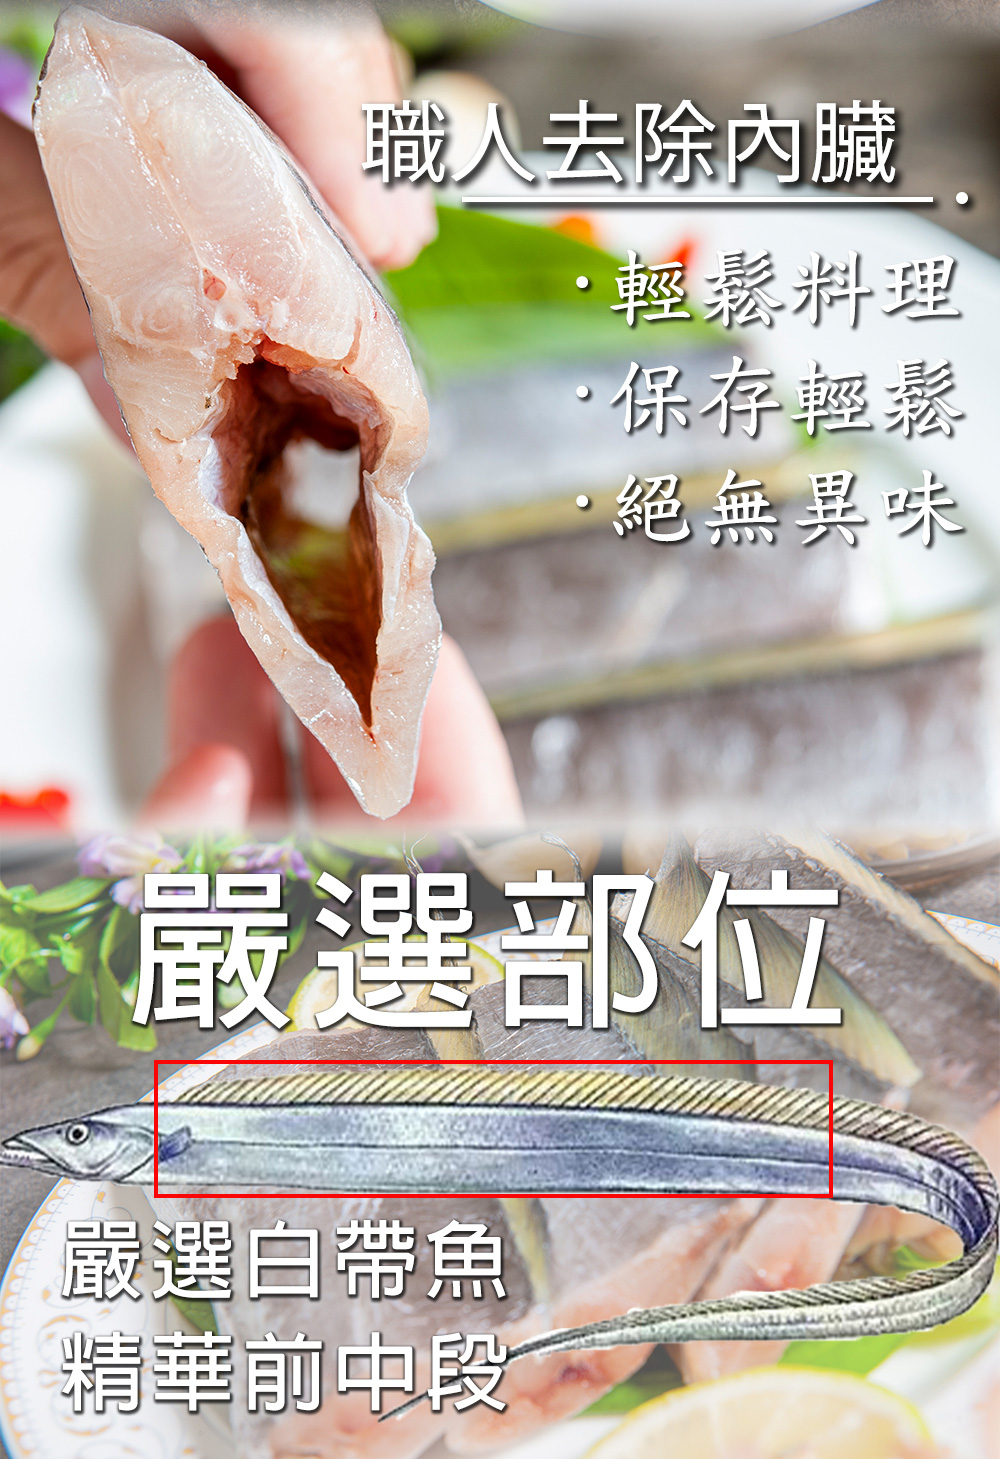       【鮮綠生活】嚴選白帶魚中段(300g±10%/包 共8包)